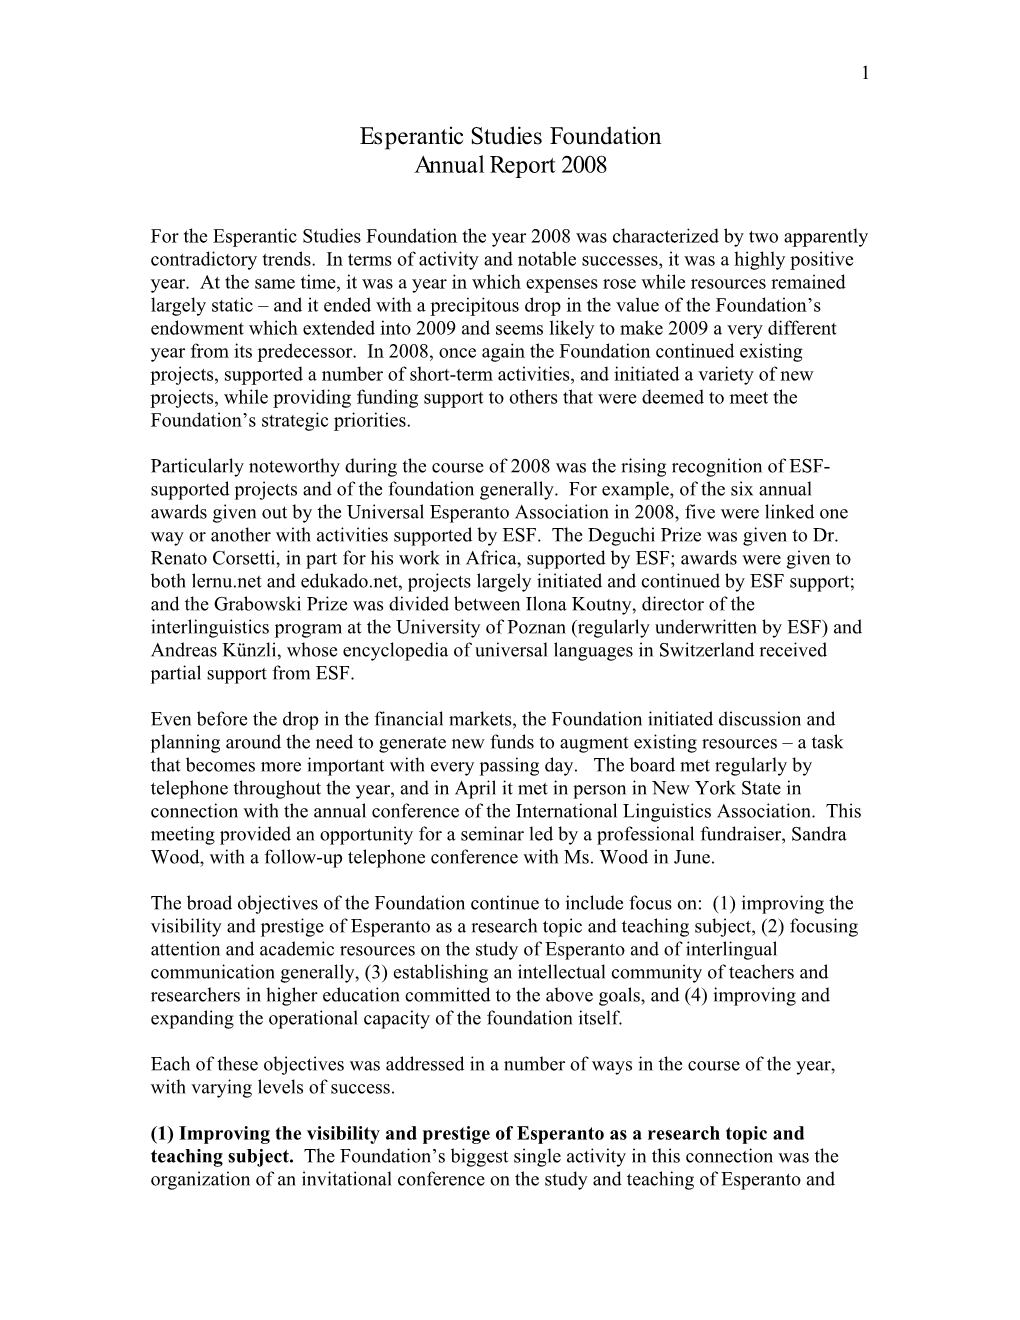 Esperantic Studies Foundation Annual Report 2005 – Draft for Newsletter